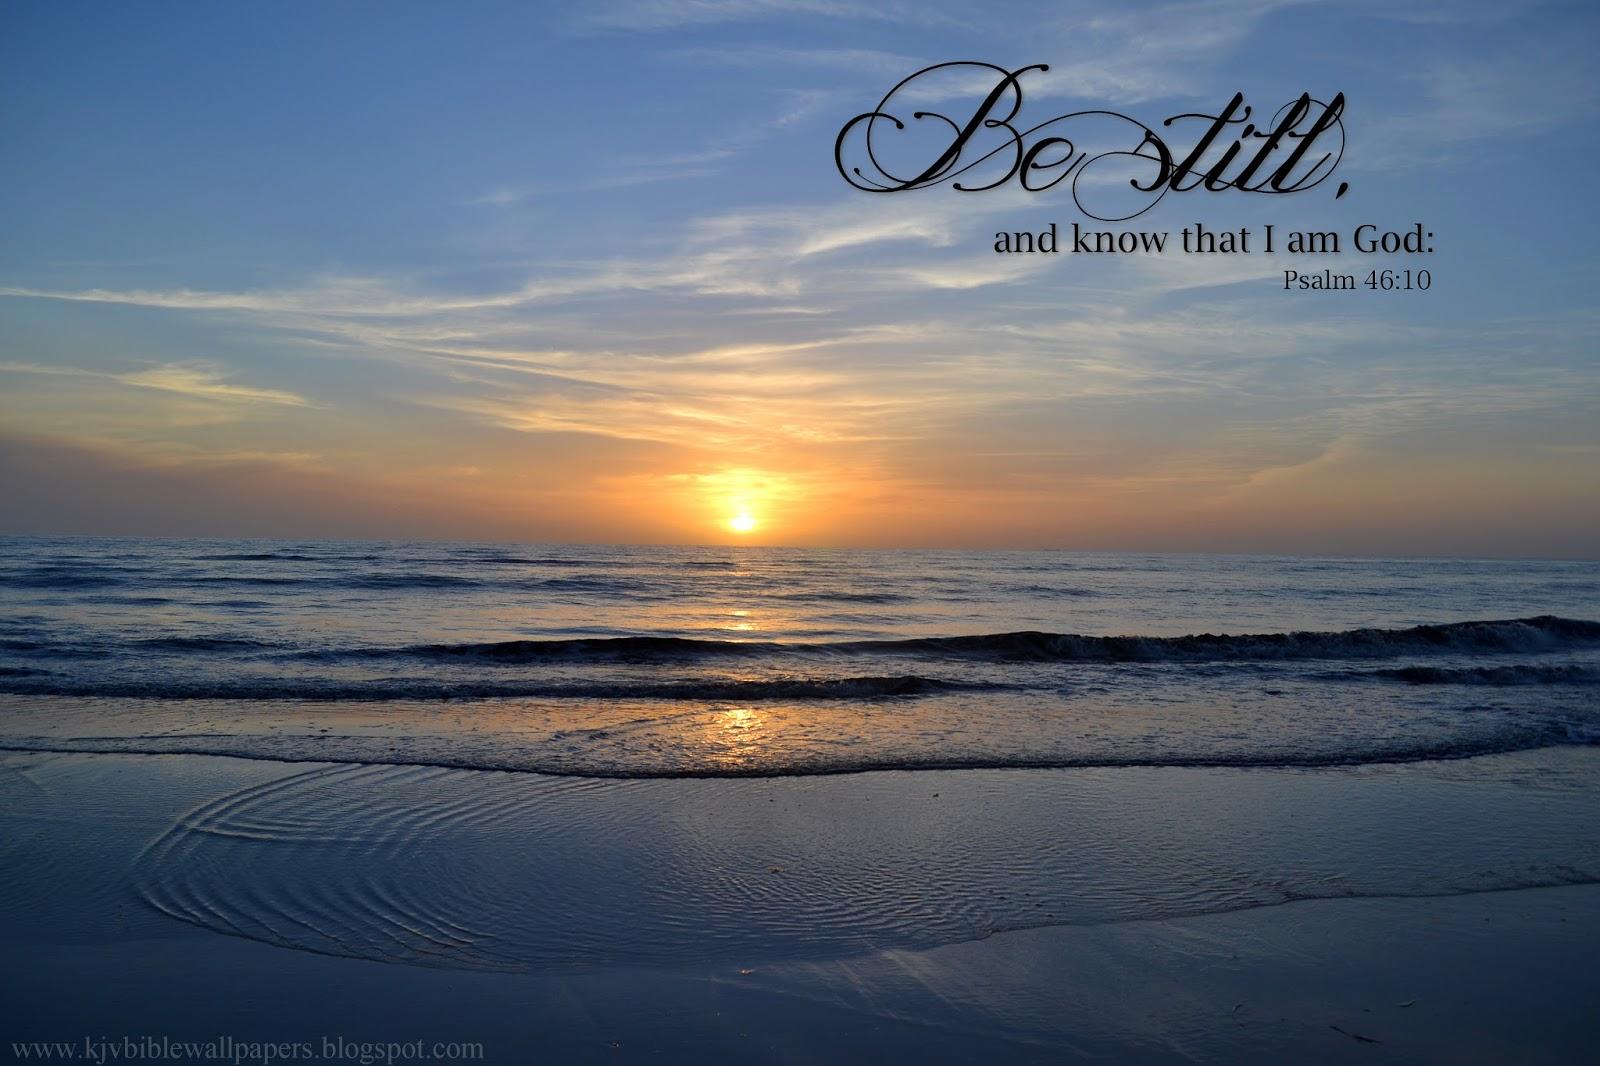 KJV Bible Wallpapers: Be still